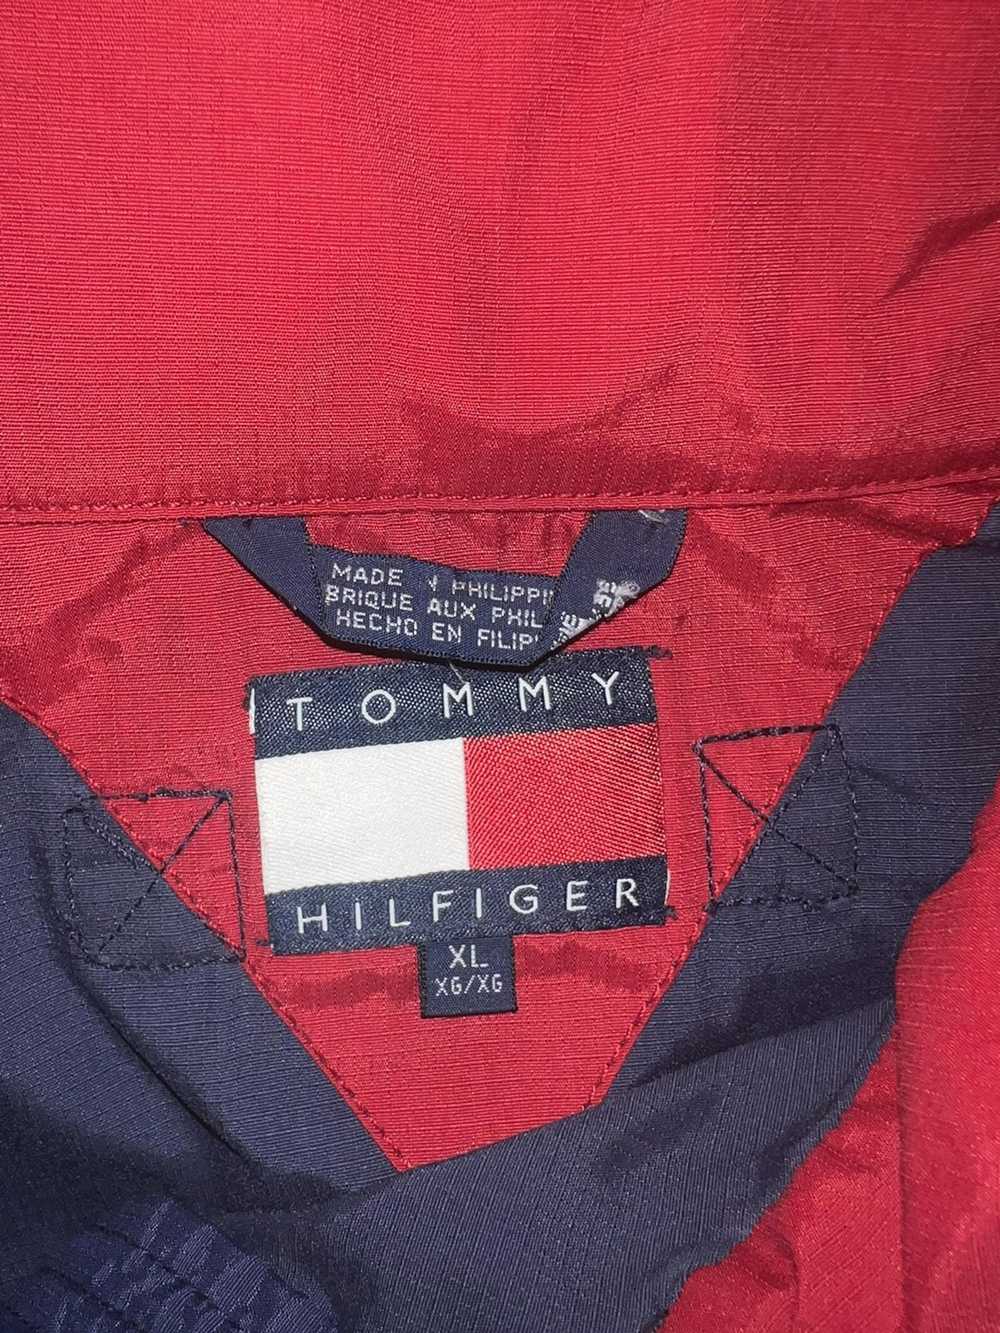 Tommy Hilfiger Vintage Tommy Hilfiger jacket - image 5